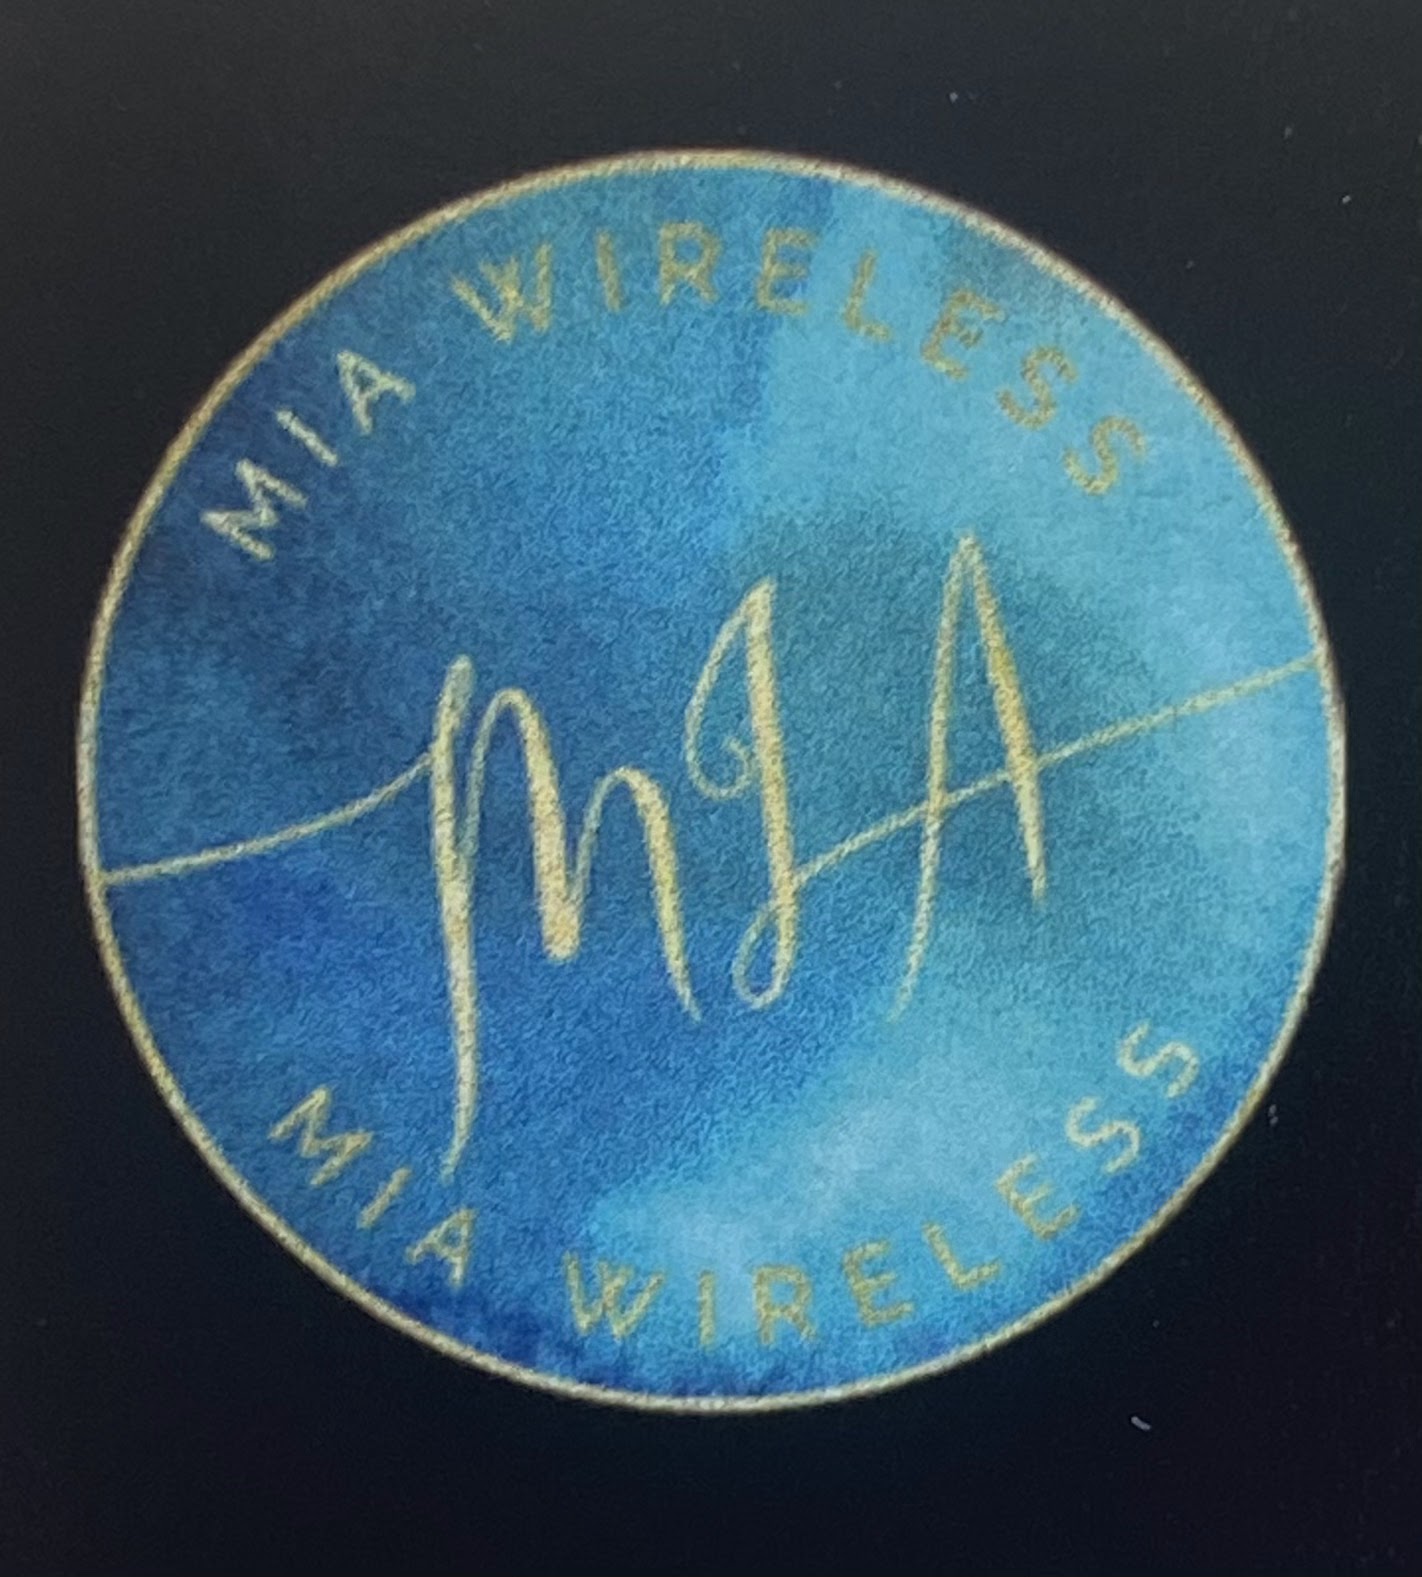 Mia Wireless LLC